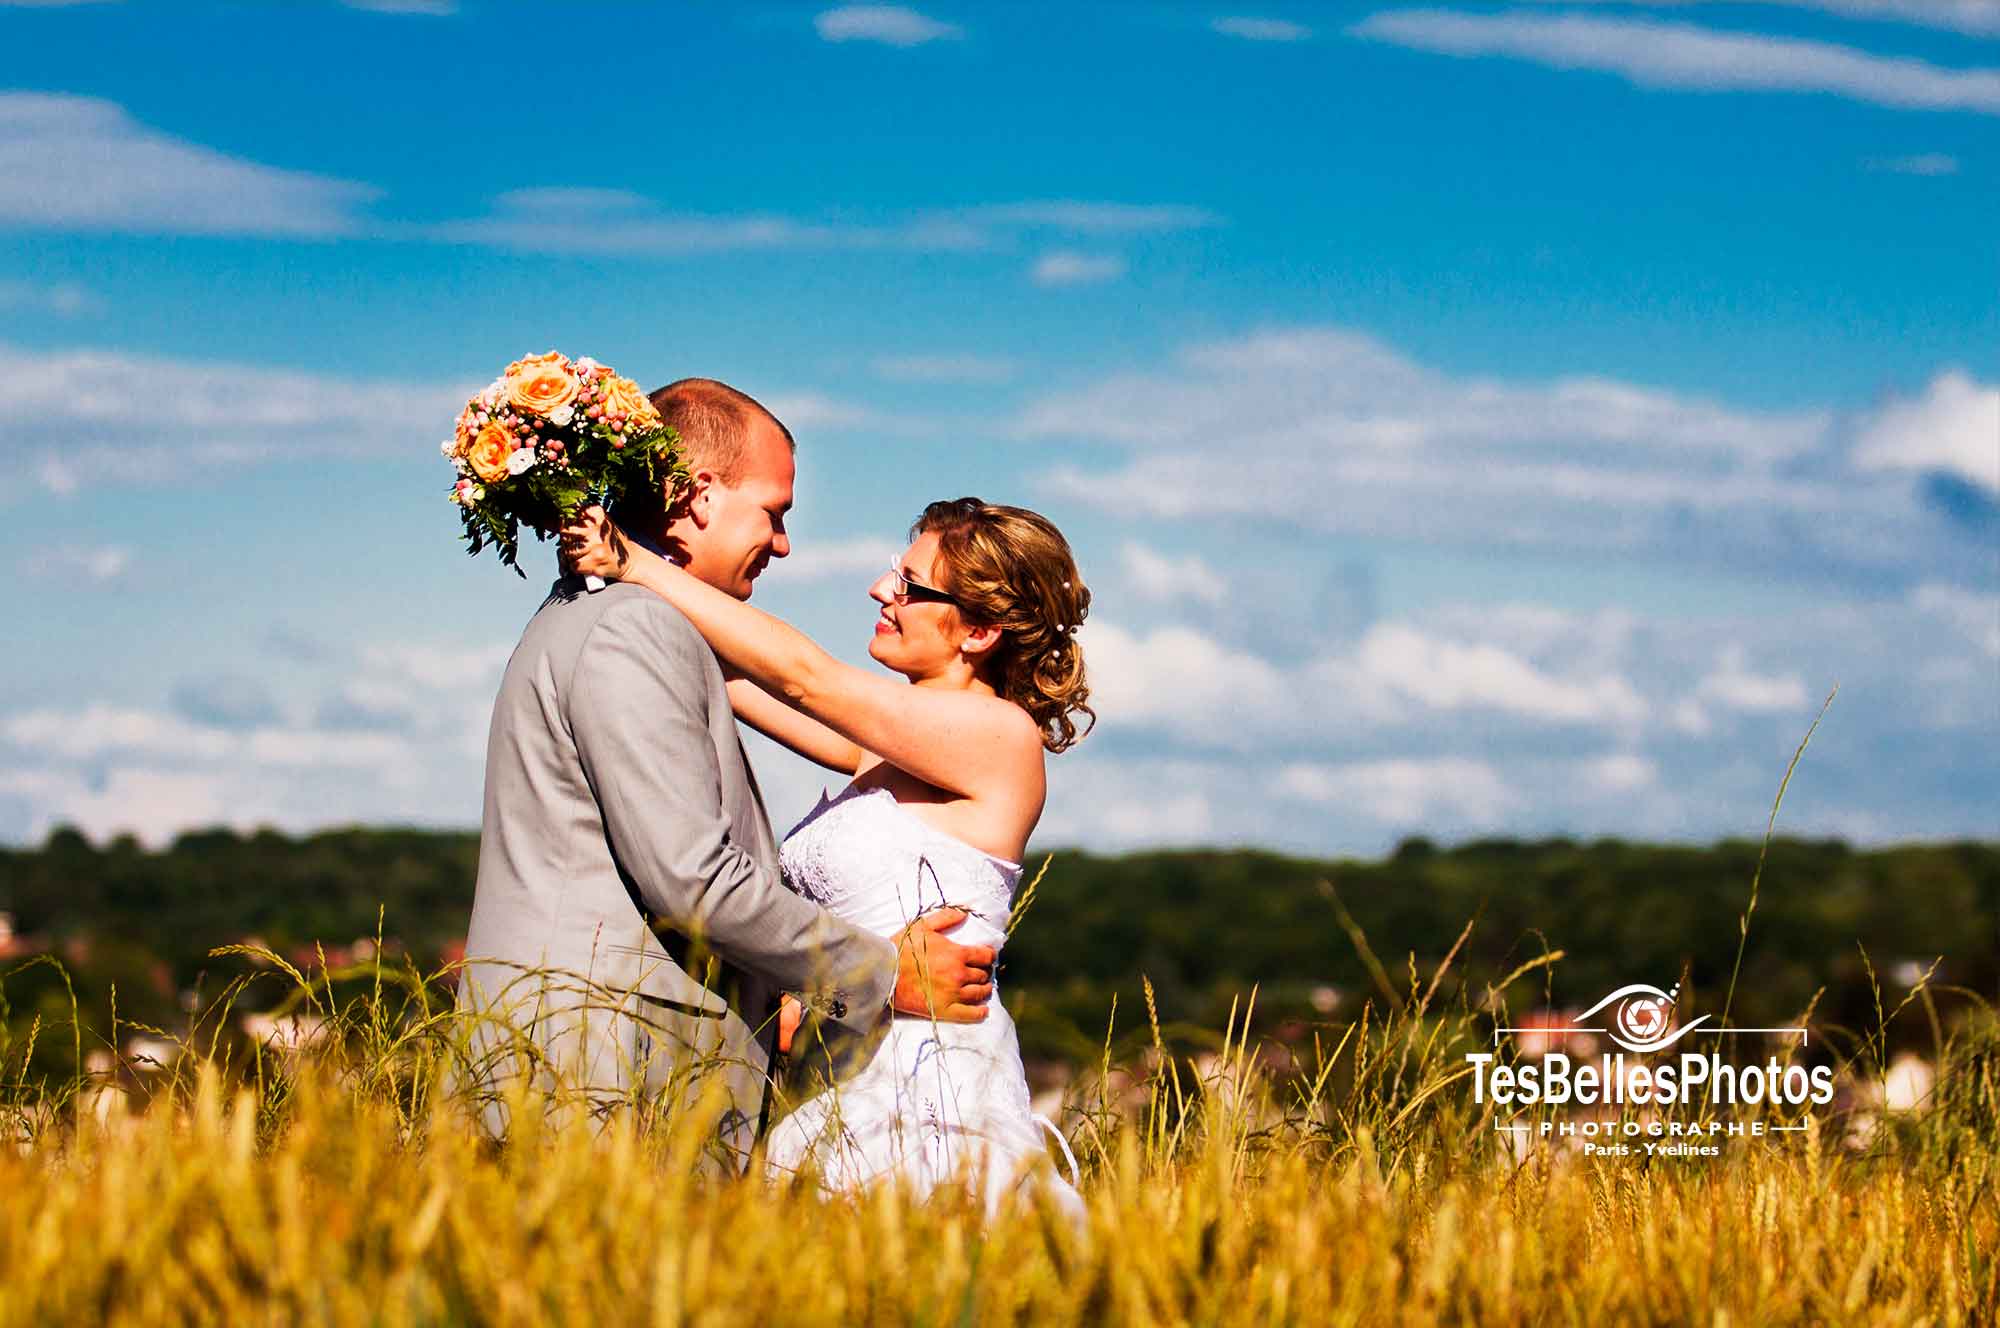 Photographe mariage Val-d’Oise tarifs, photographe pas cher pour photo mariage